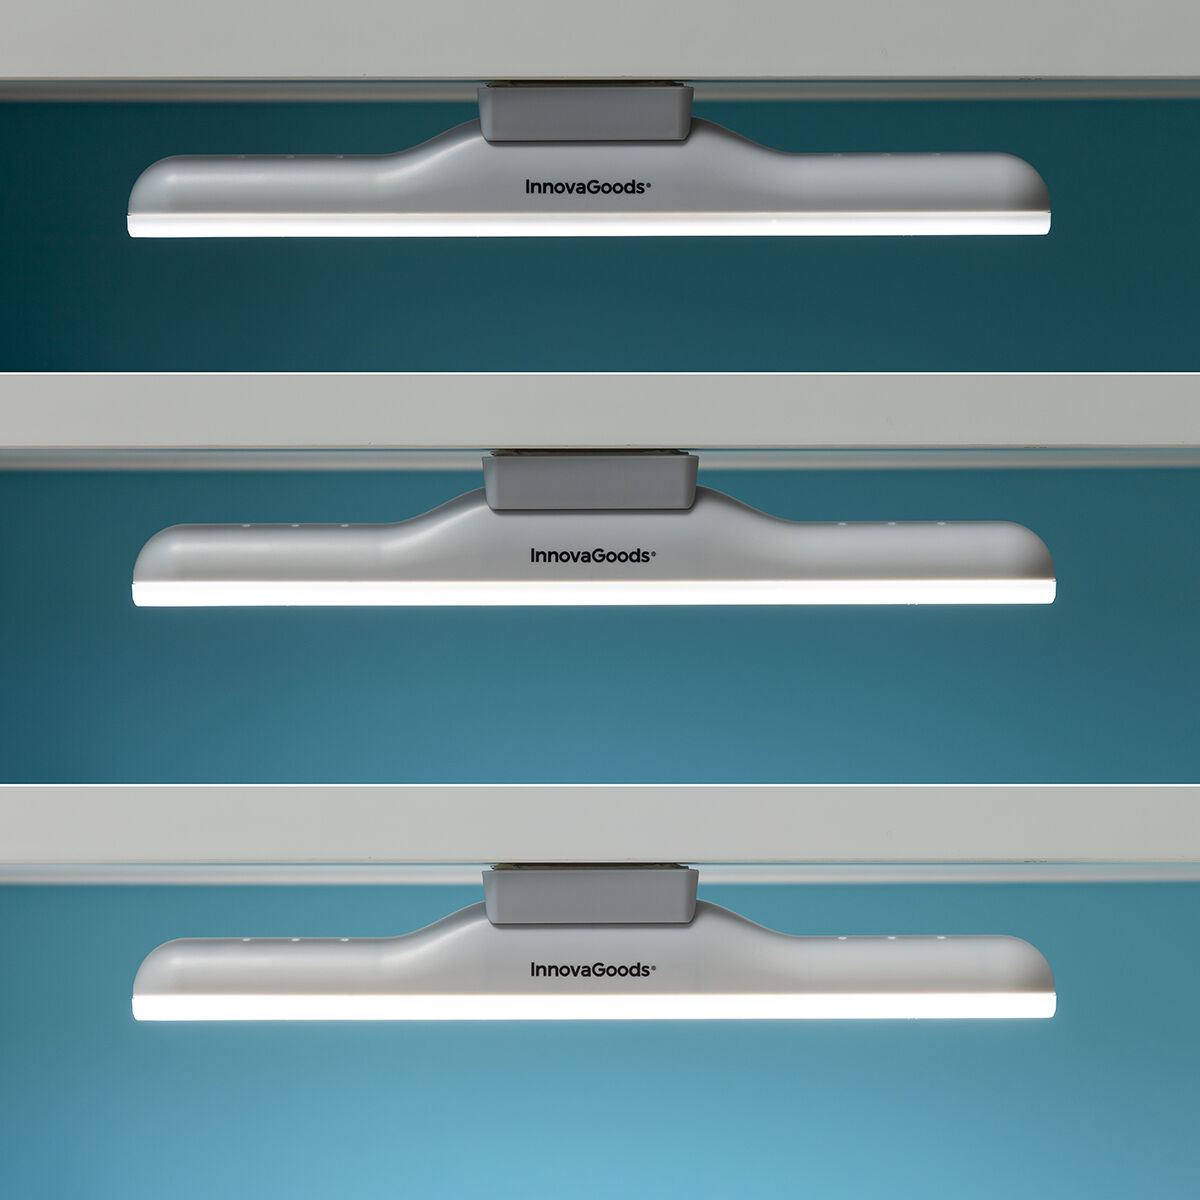 2-in-1 Magnetische wiederaufladbare LED-Lampe Lamal InnovaGoods - CA International 